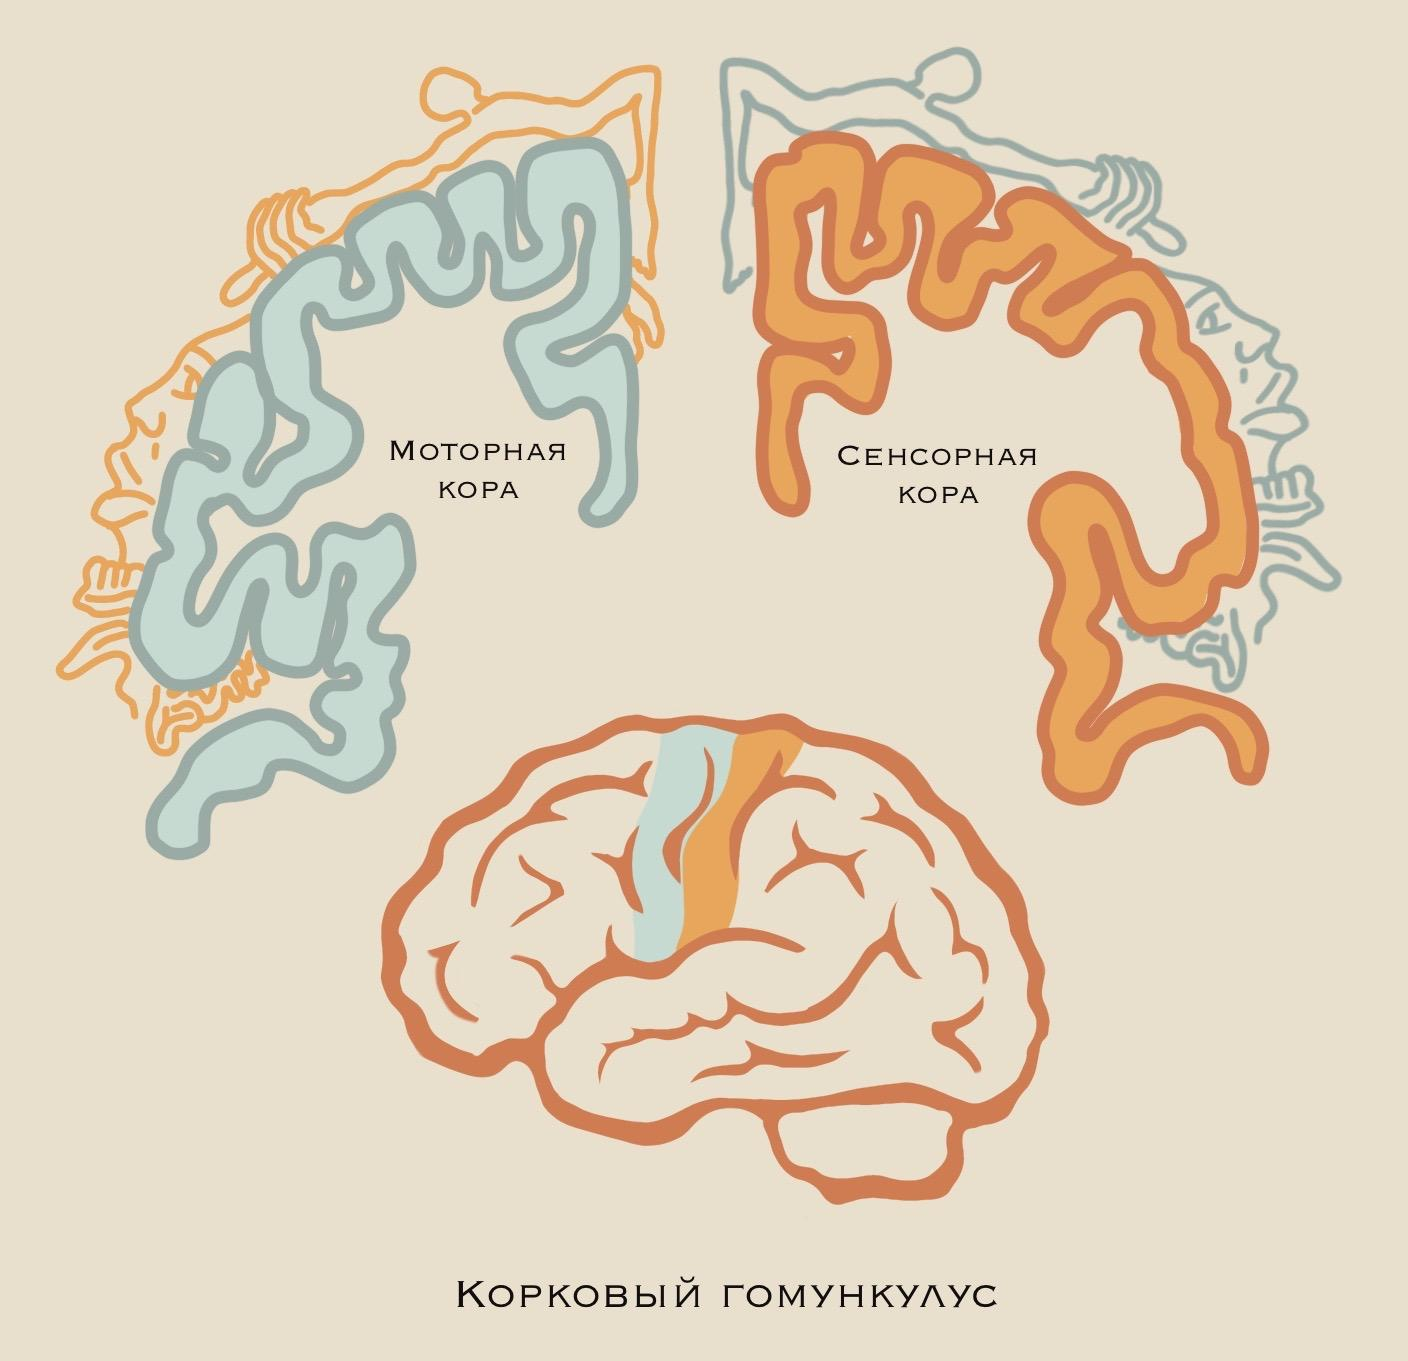 Репрезентация различных частей тела в головном мозге